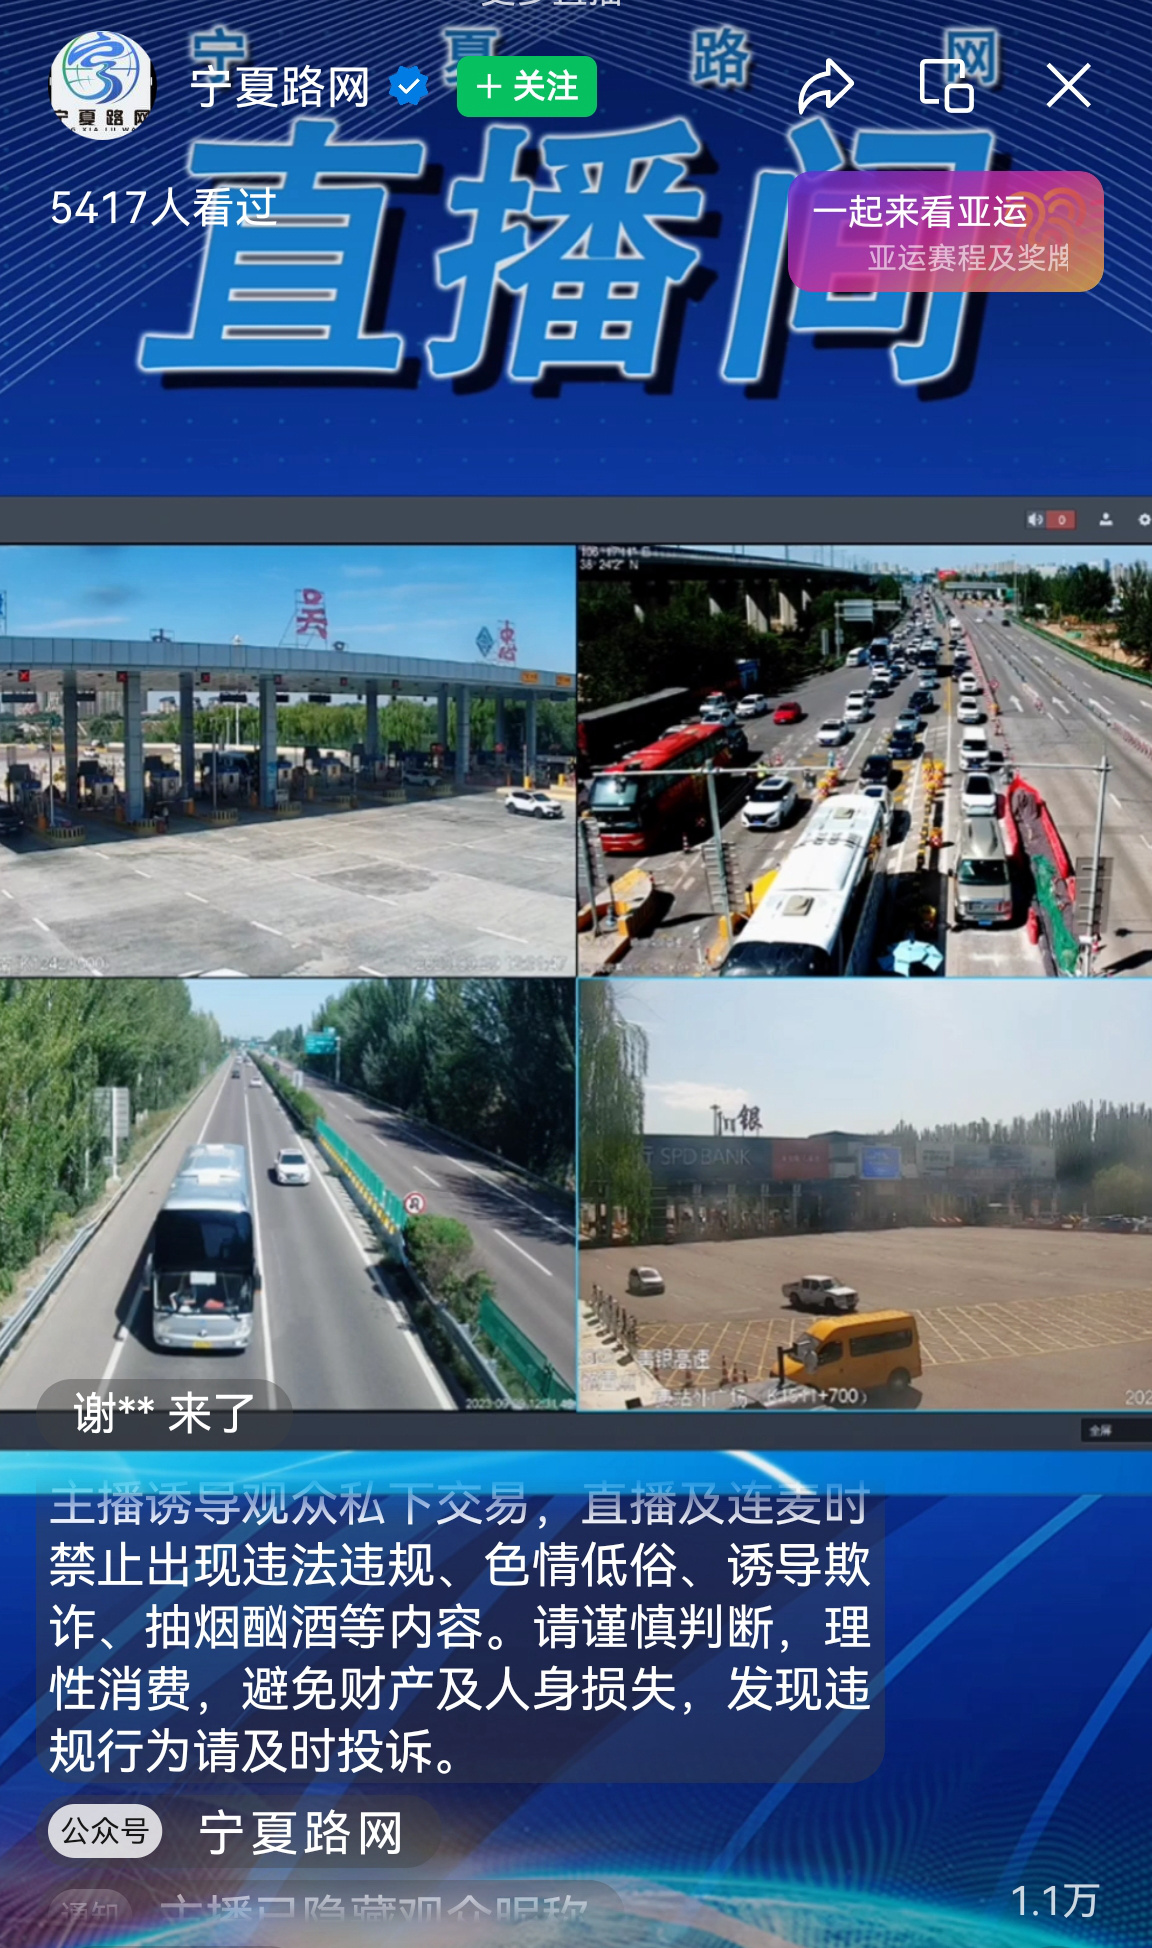 高速路况-全国高速公路实时路况查询 – 北京才牛图科技有限公司